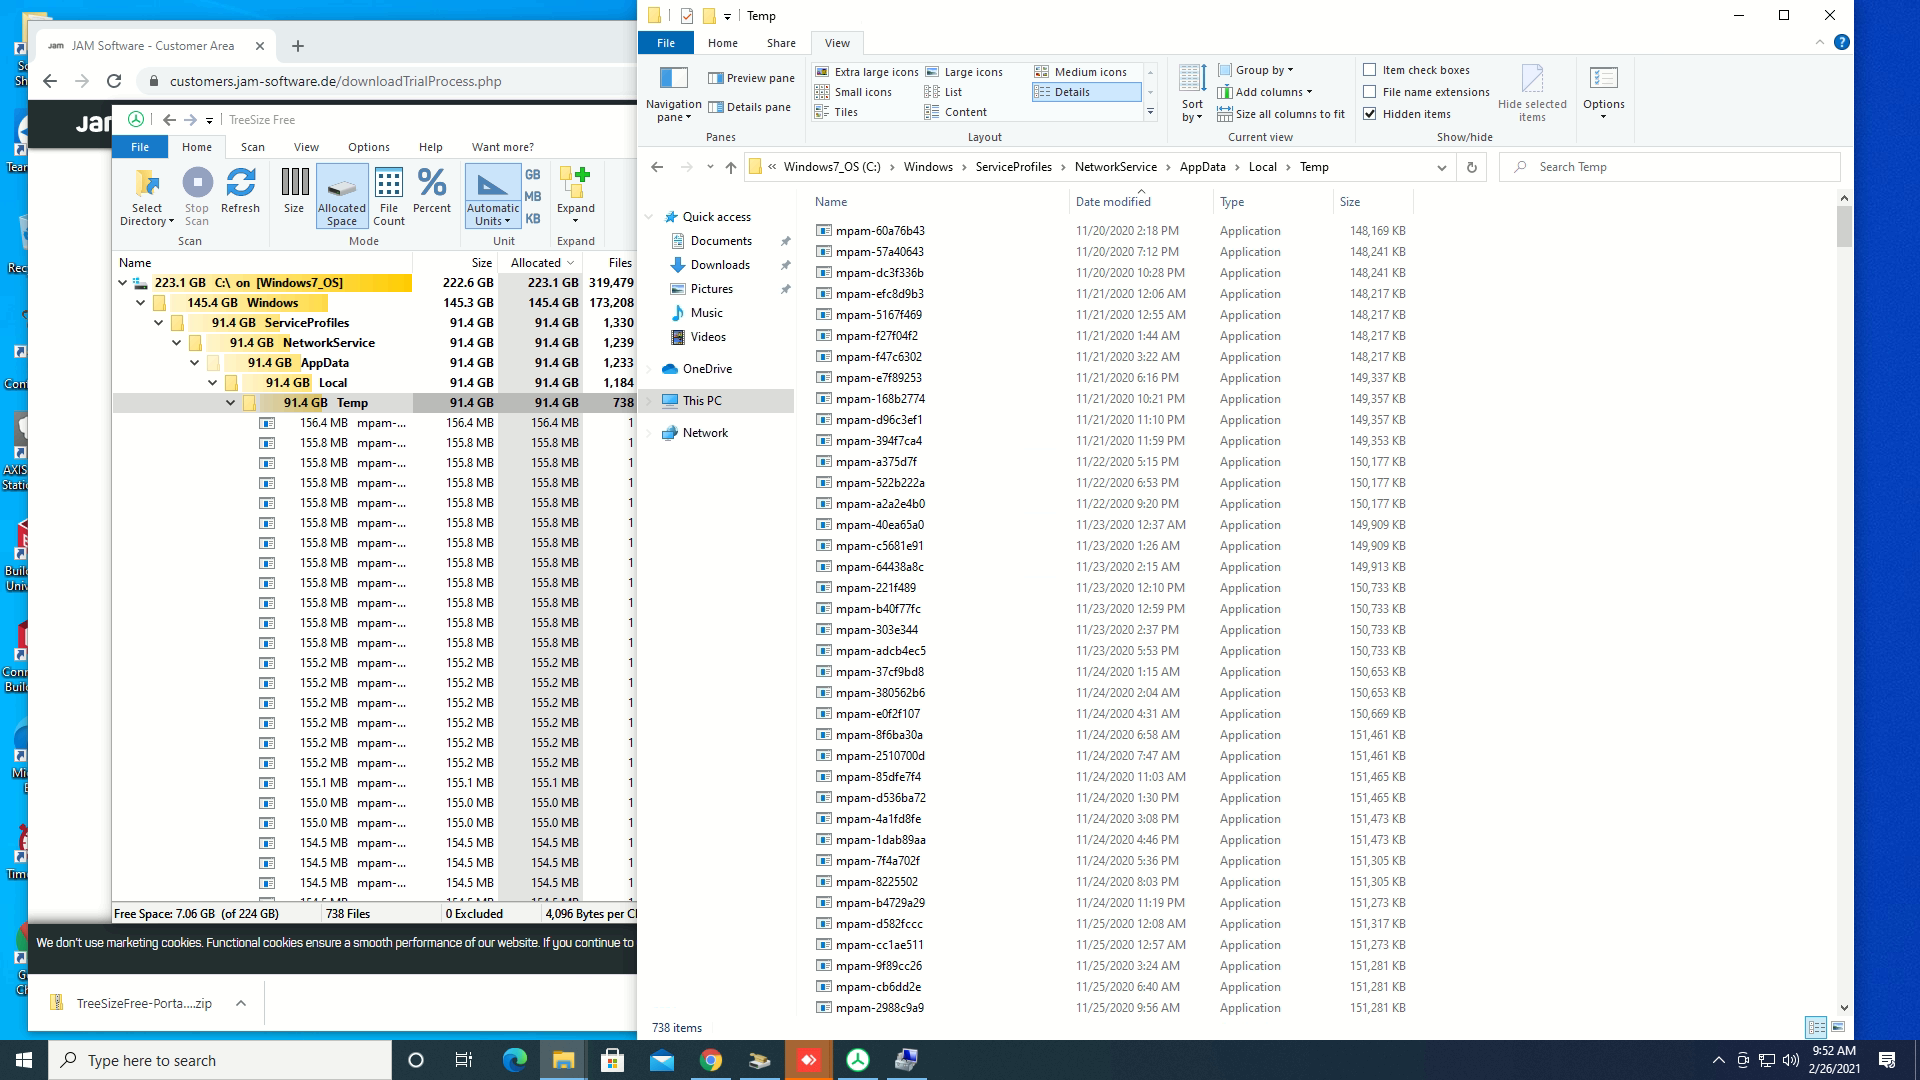 mpam files filling hard disk 185d72f2-ed9d-4fc6-977b-c51836c0e524?upload=true.png